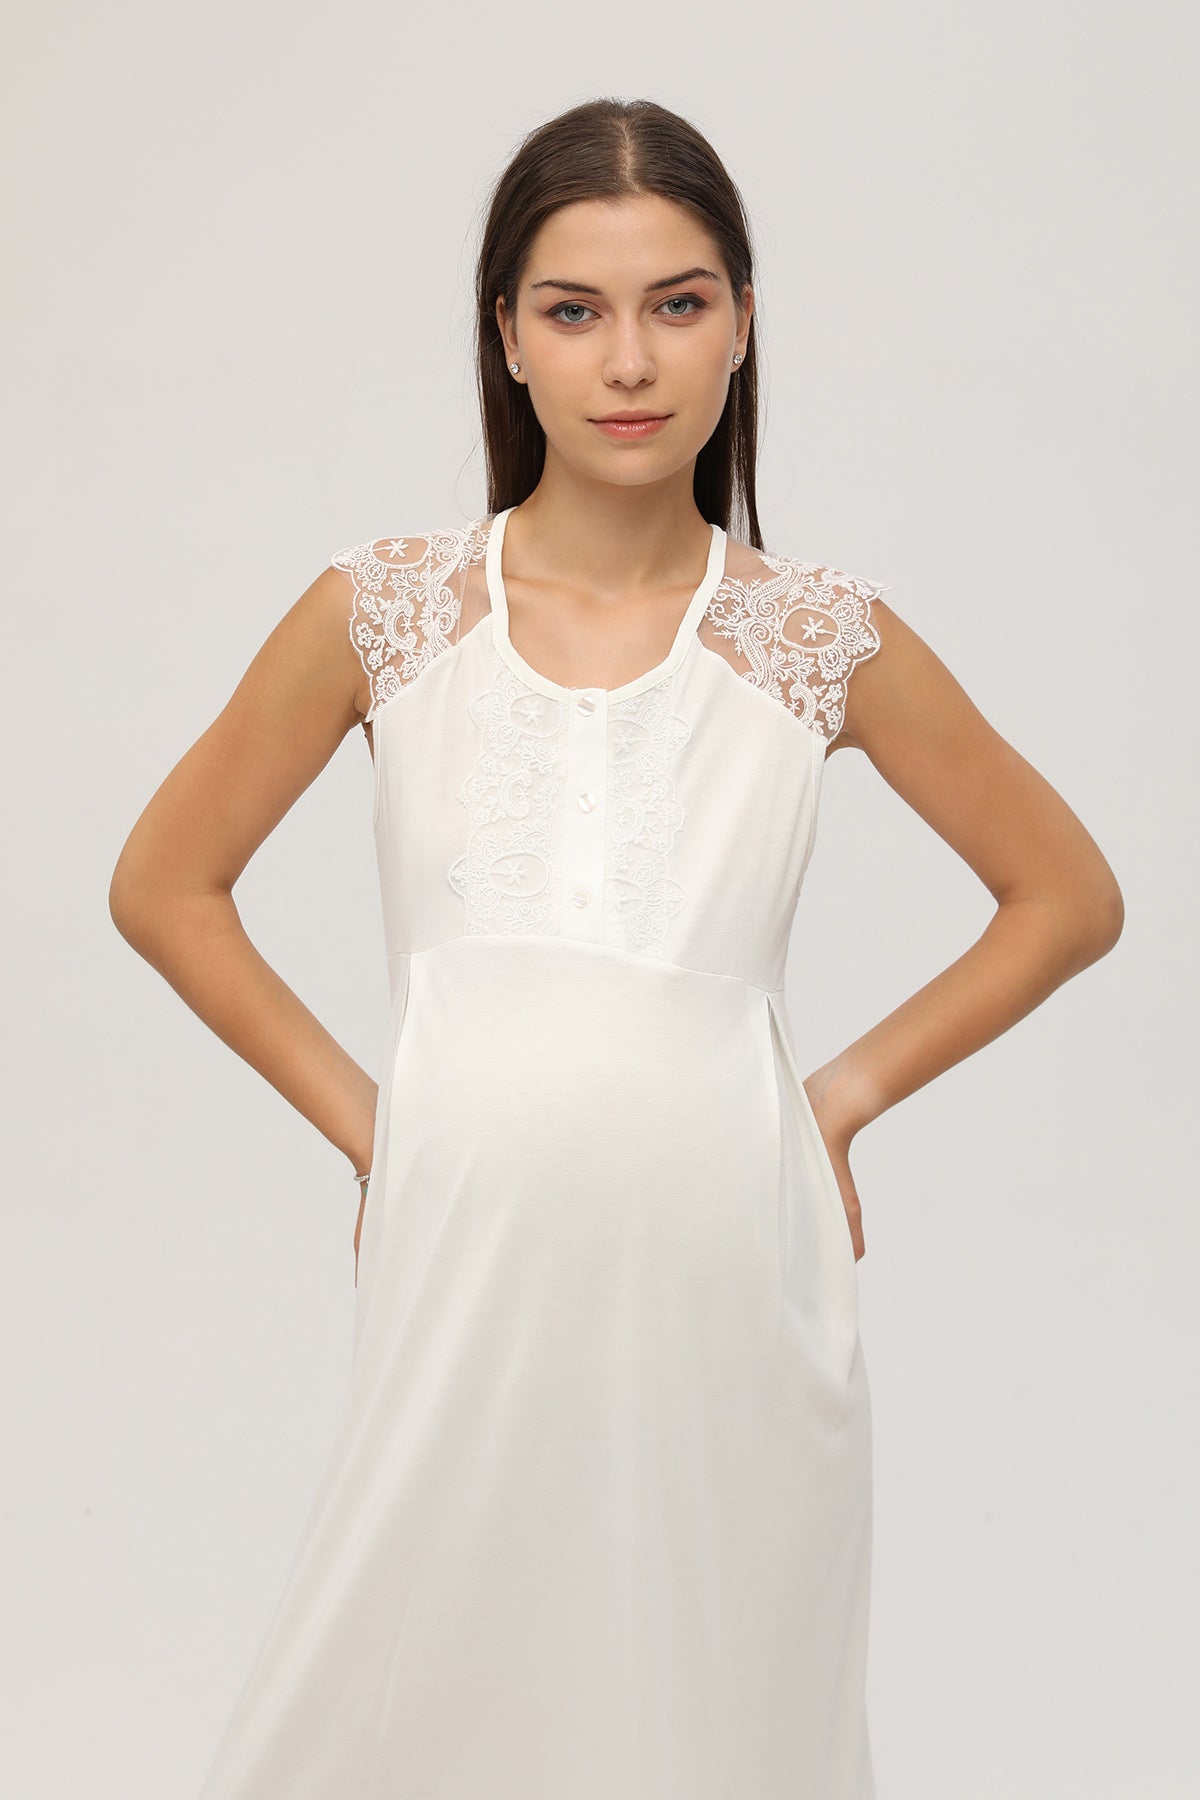 Shopymommy 107 Lace Shoulder Maternity & Nursing Nightgown Ecru